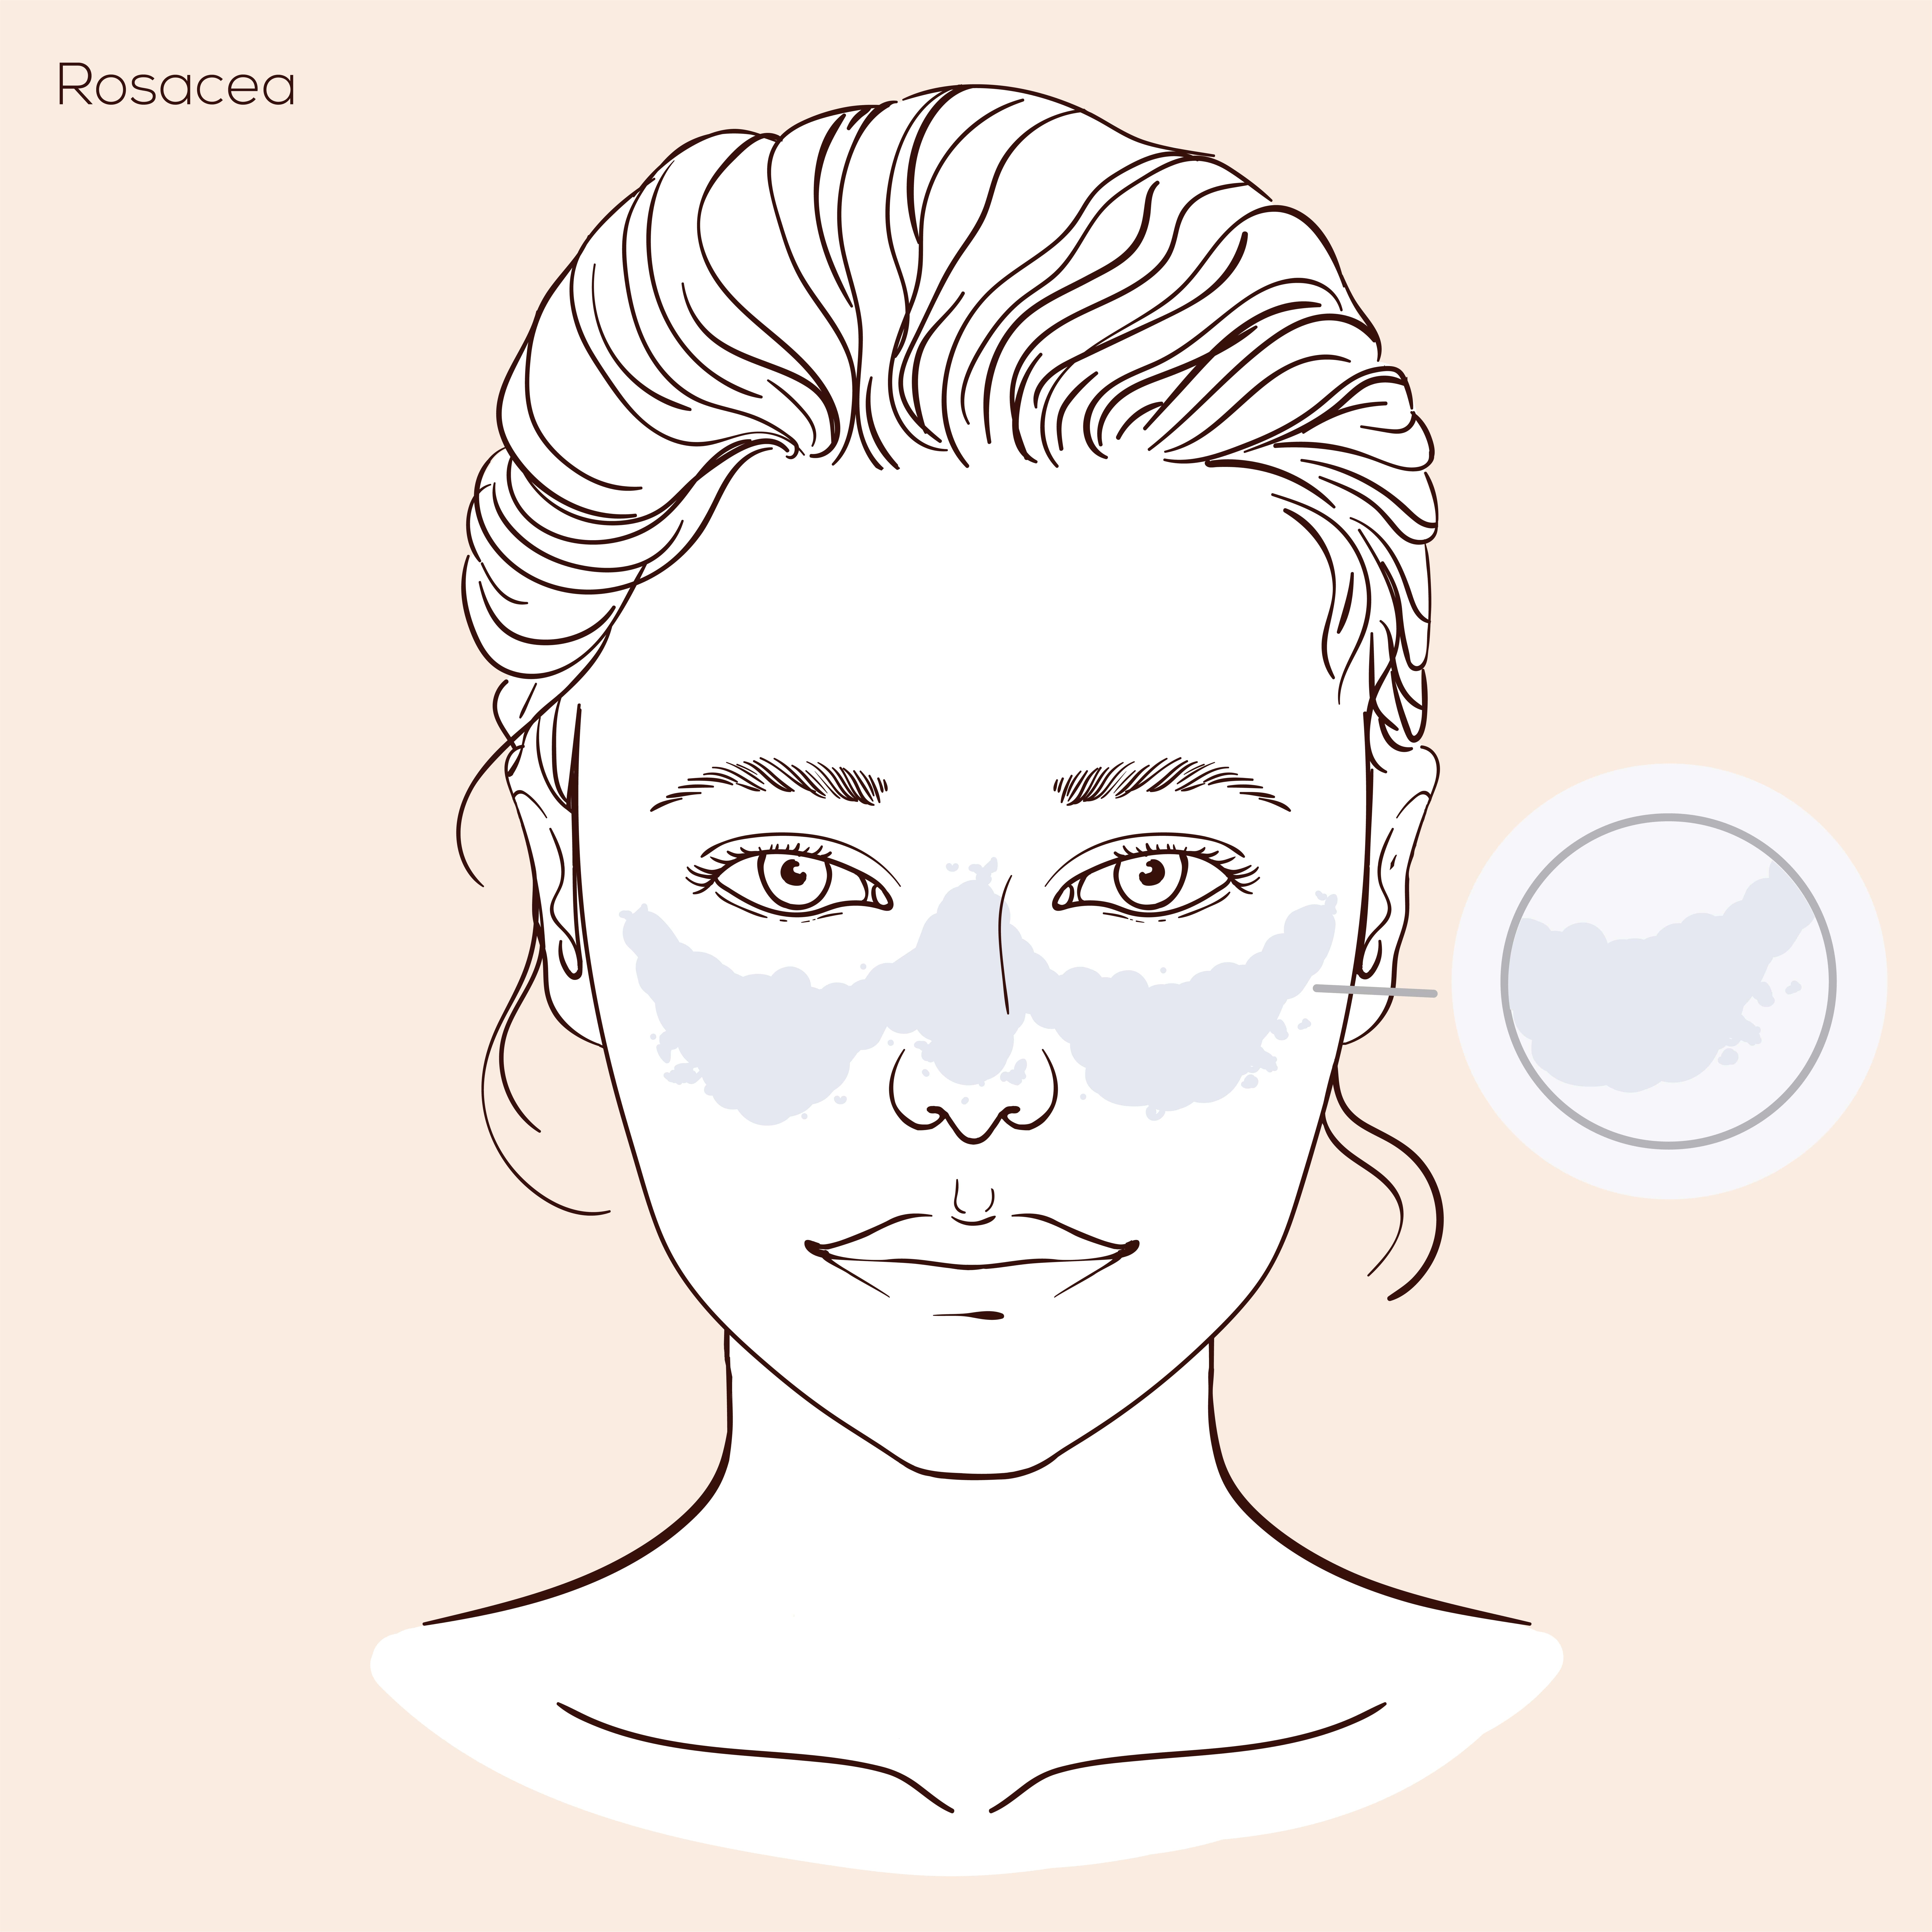 Illustratie van gezicht met huidprobleem rosacea